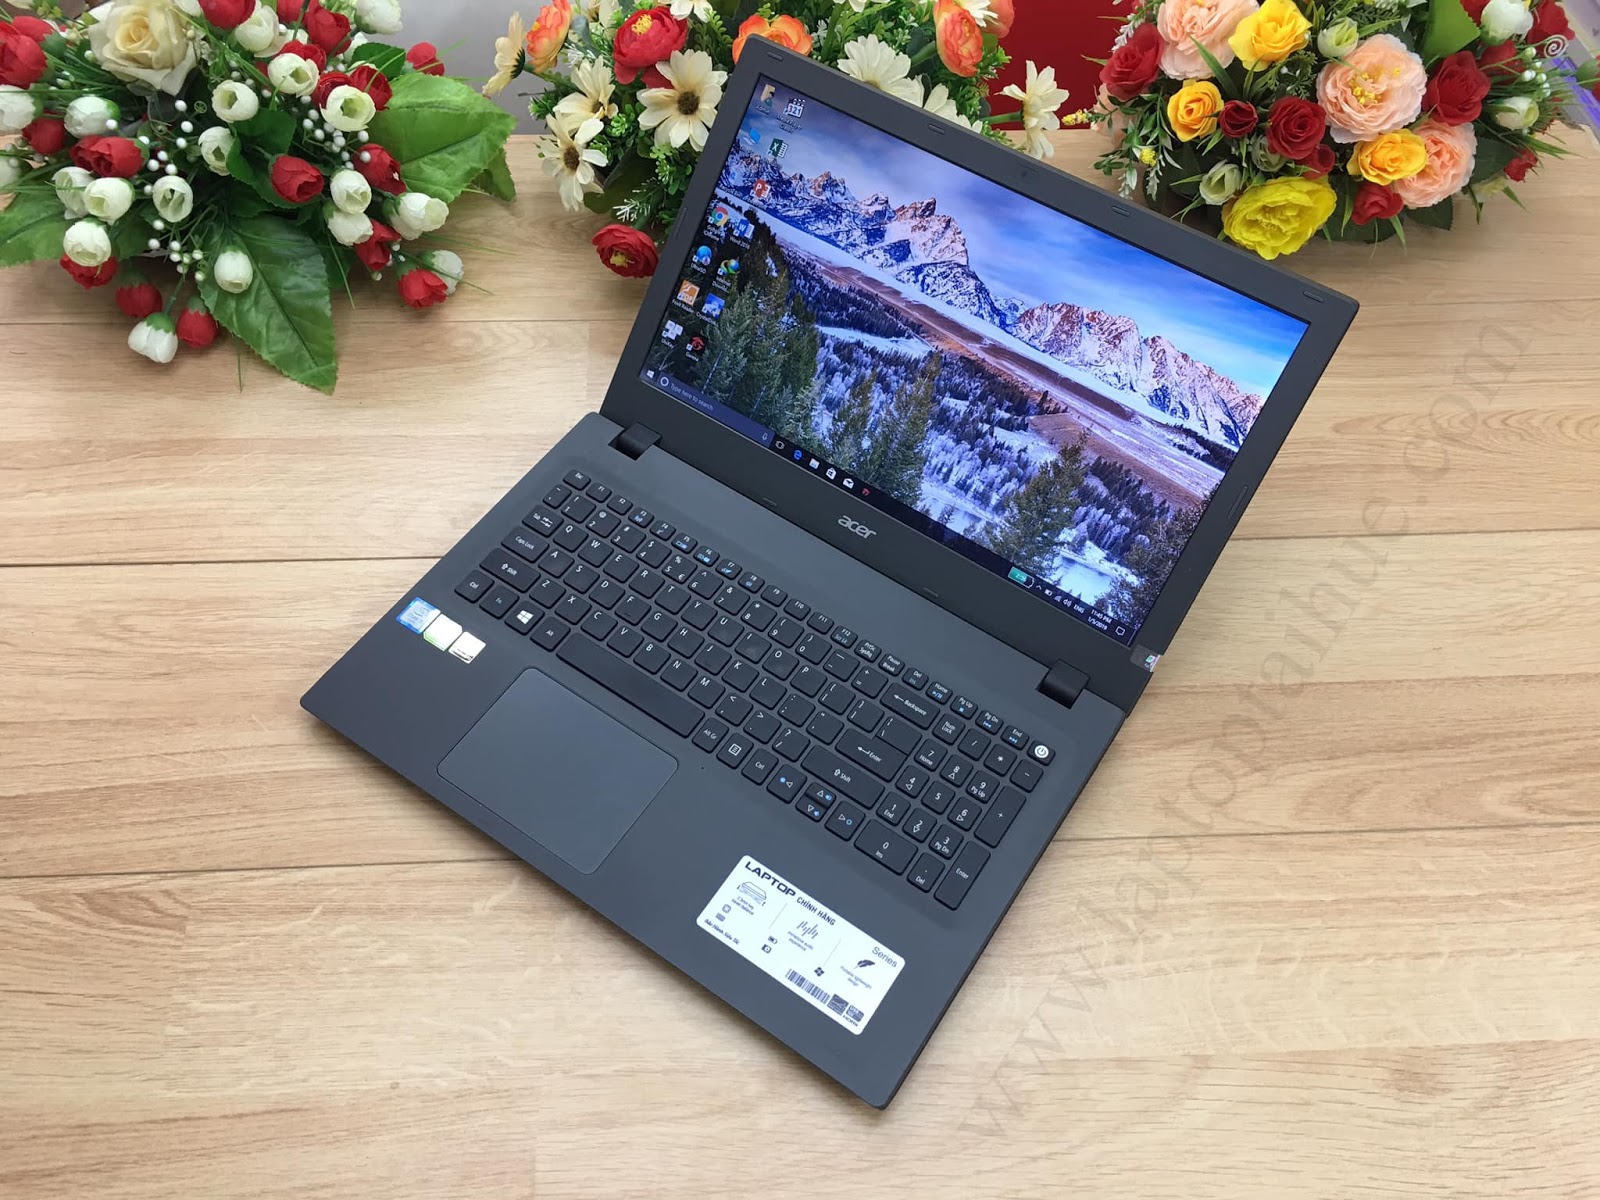 Acer Aspire E5-573G Notebook Review - NotebookCheck.net Reviews